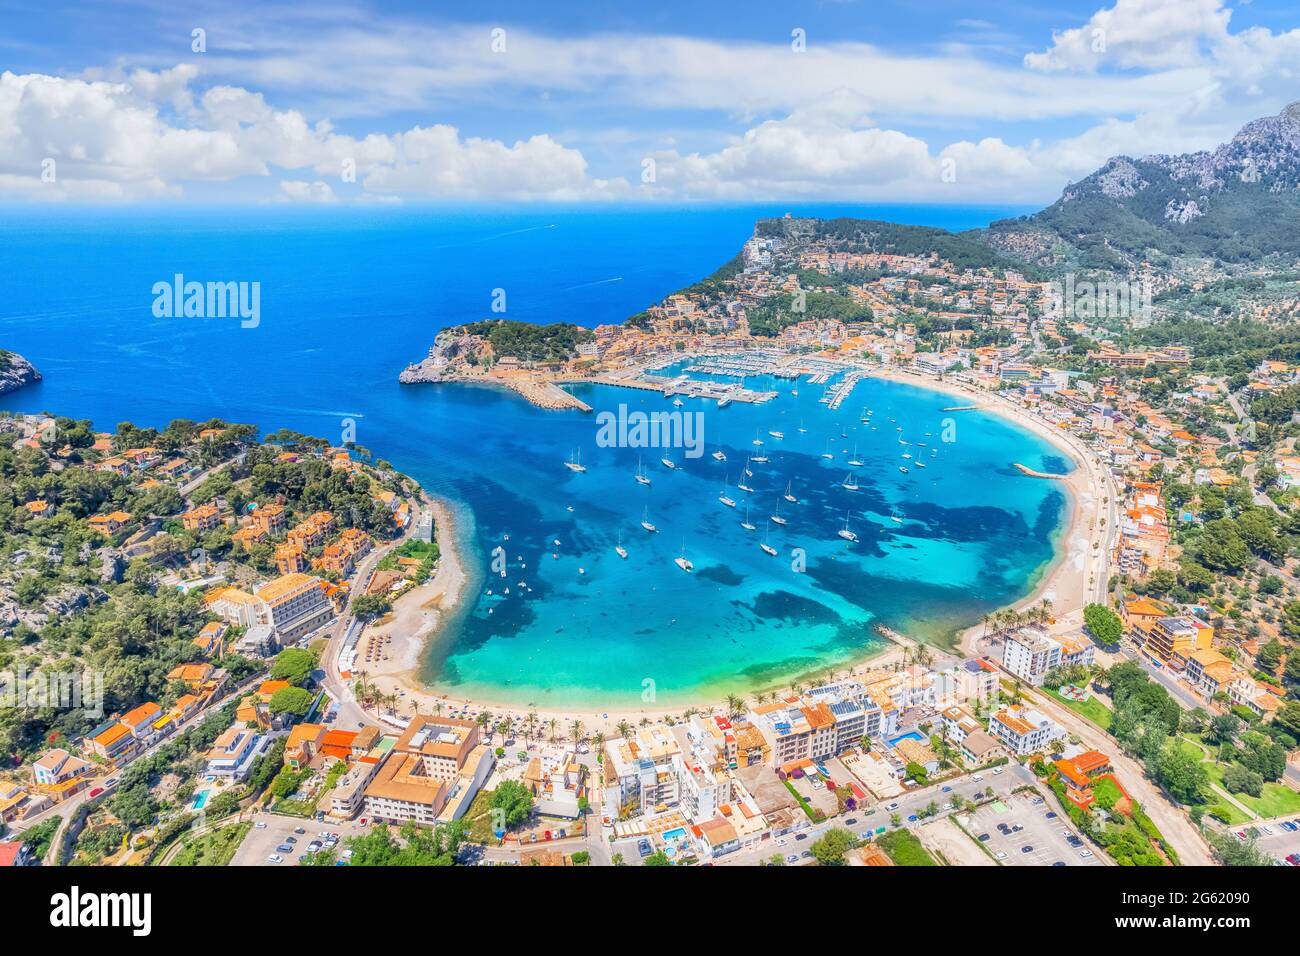 Aerial view of  Porte de Soller, Mallorca island, Spain Stock Photo